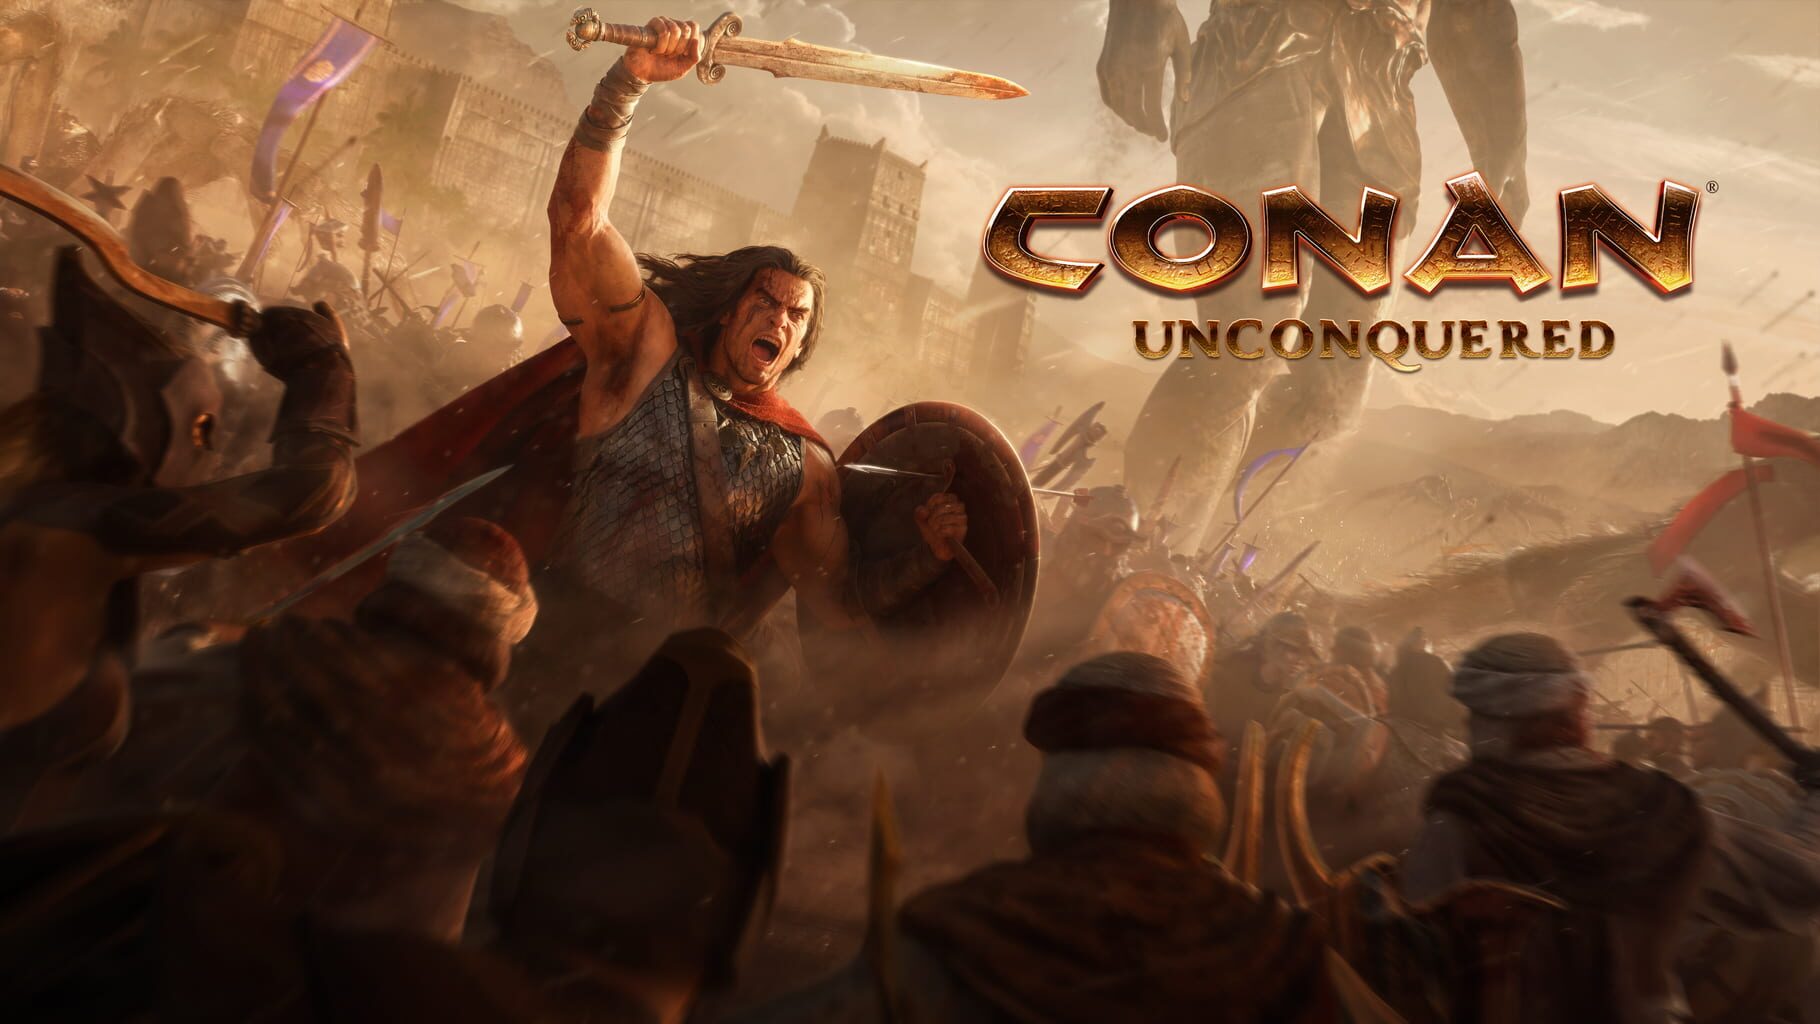 Arte - Conan Unconquered